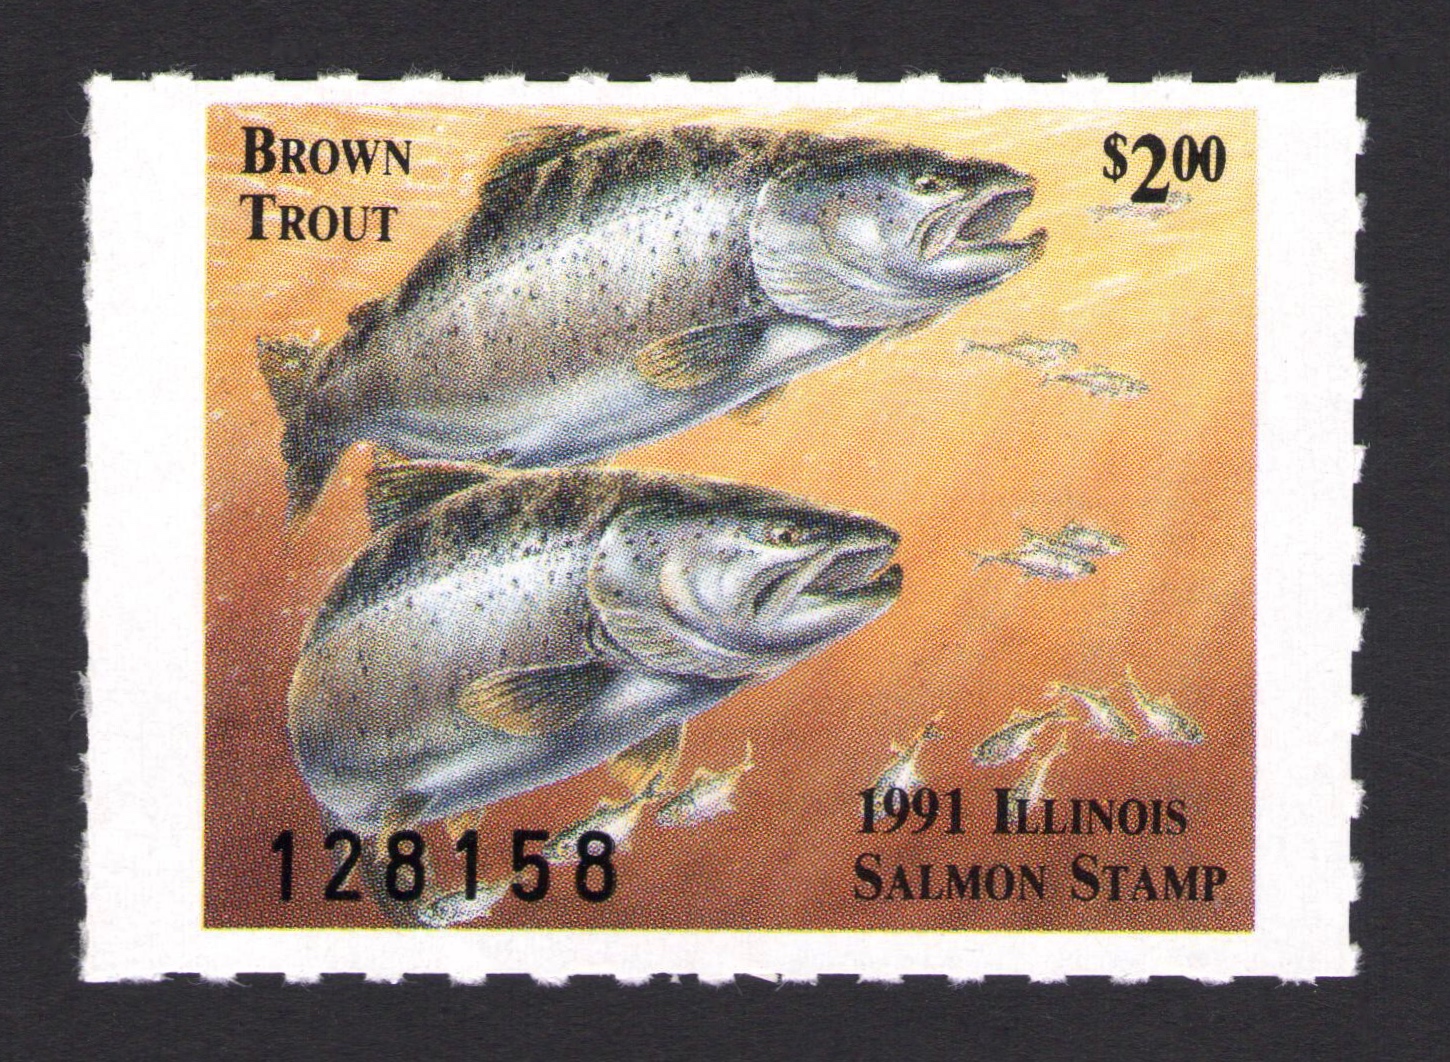 1991 Illinois Salmon